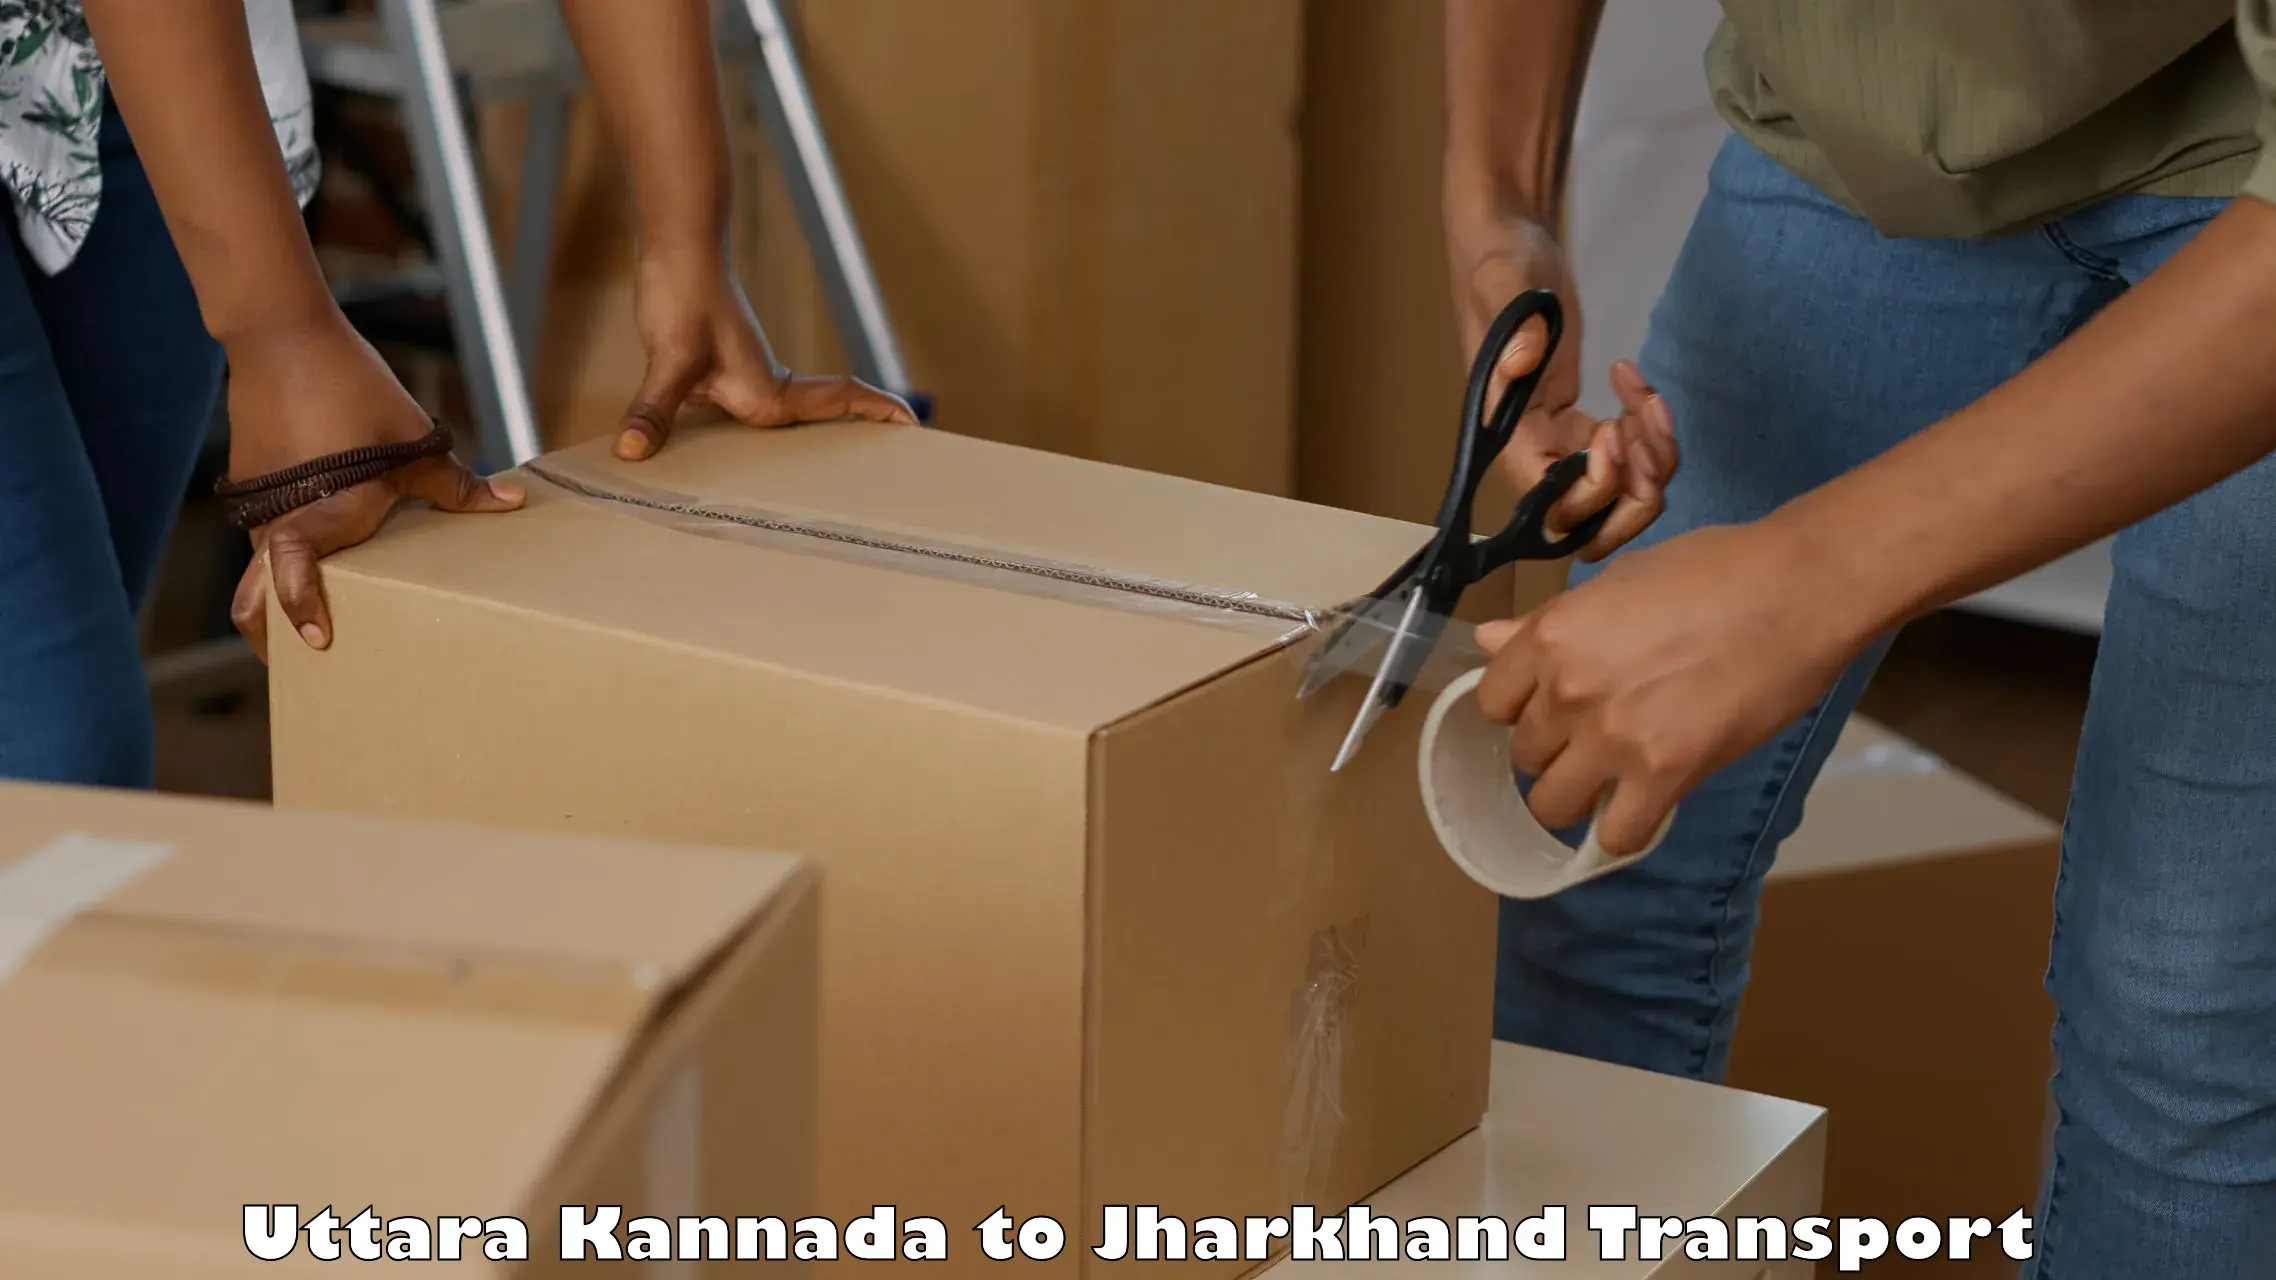 Commercial transport service Uttara Kannada to Koderma